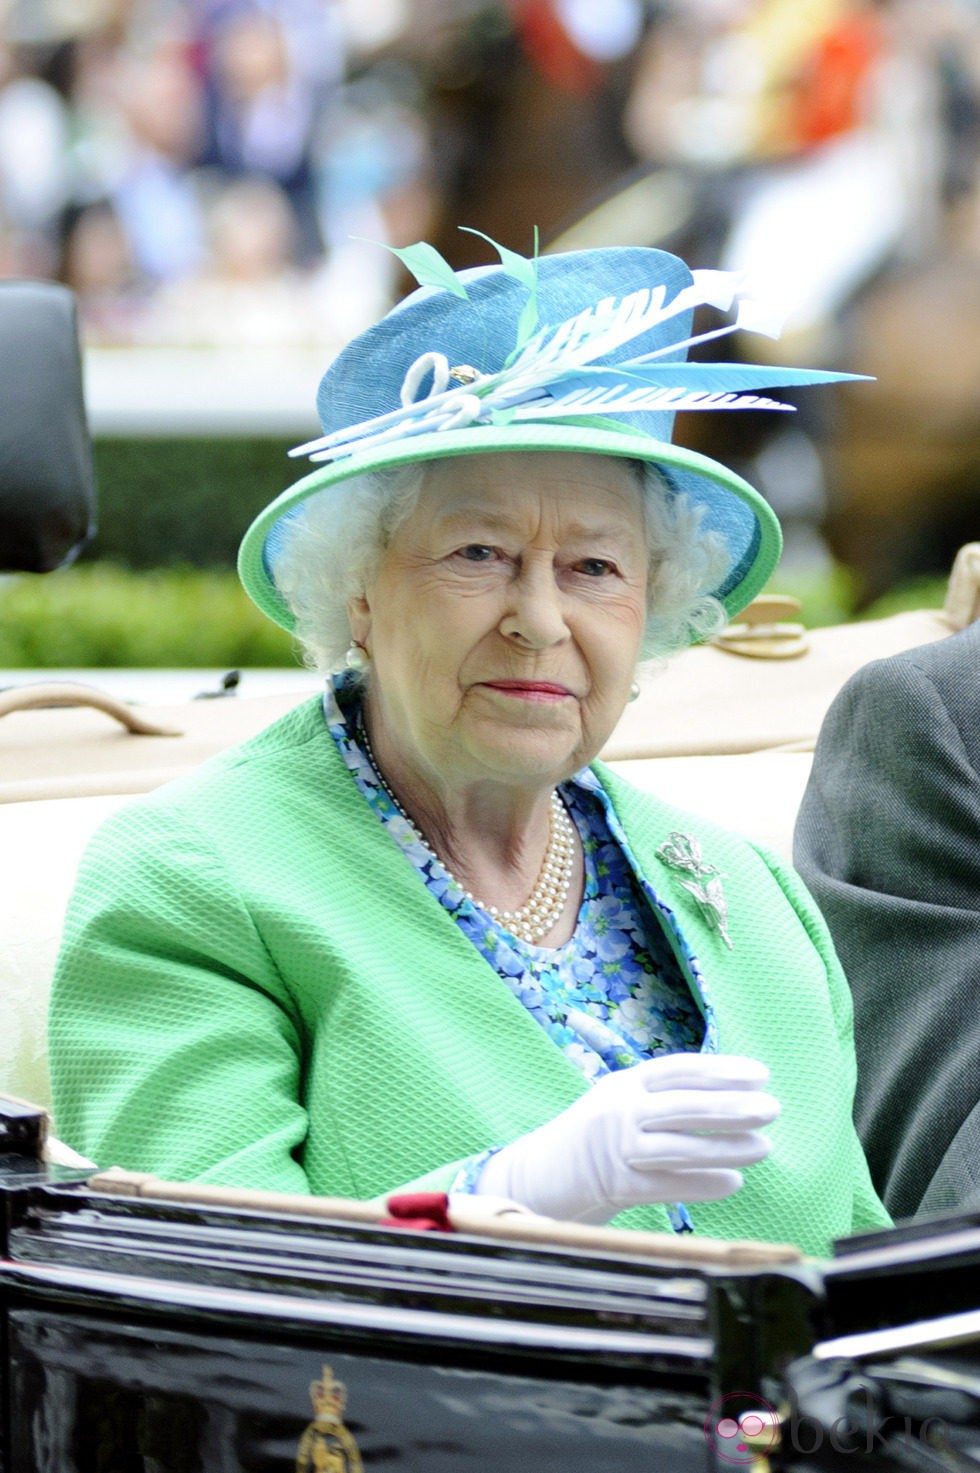 La Reina Isabel II con sombrero en color aguamarina en las carreras de Ascot 2012